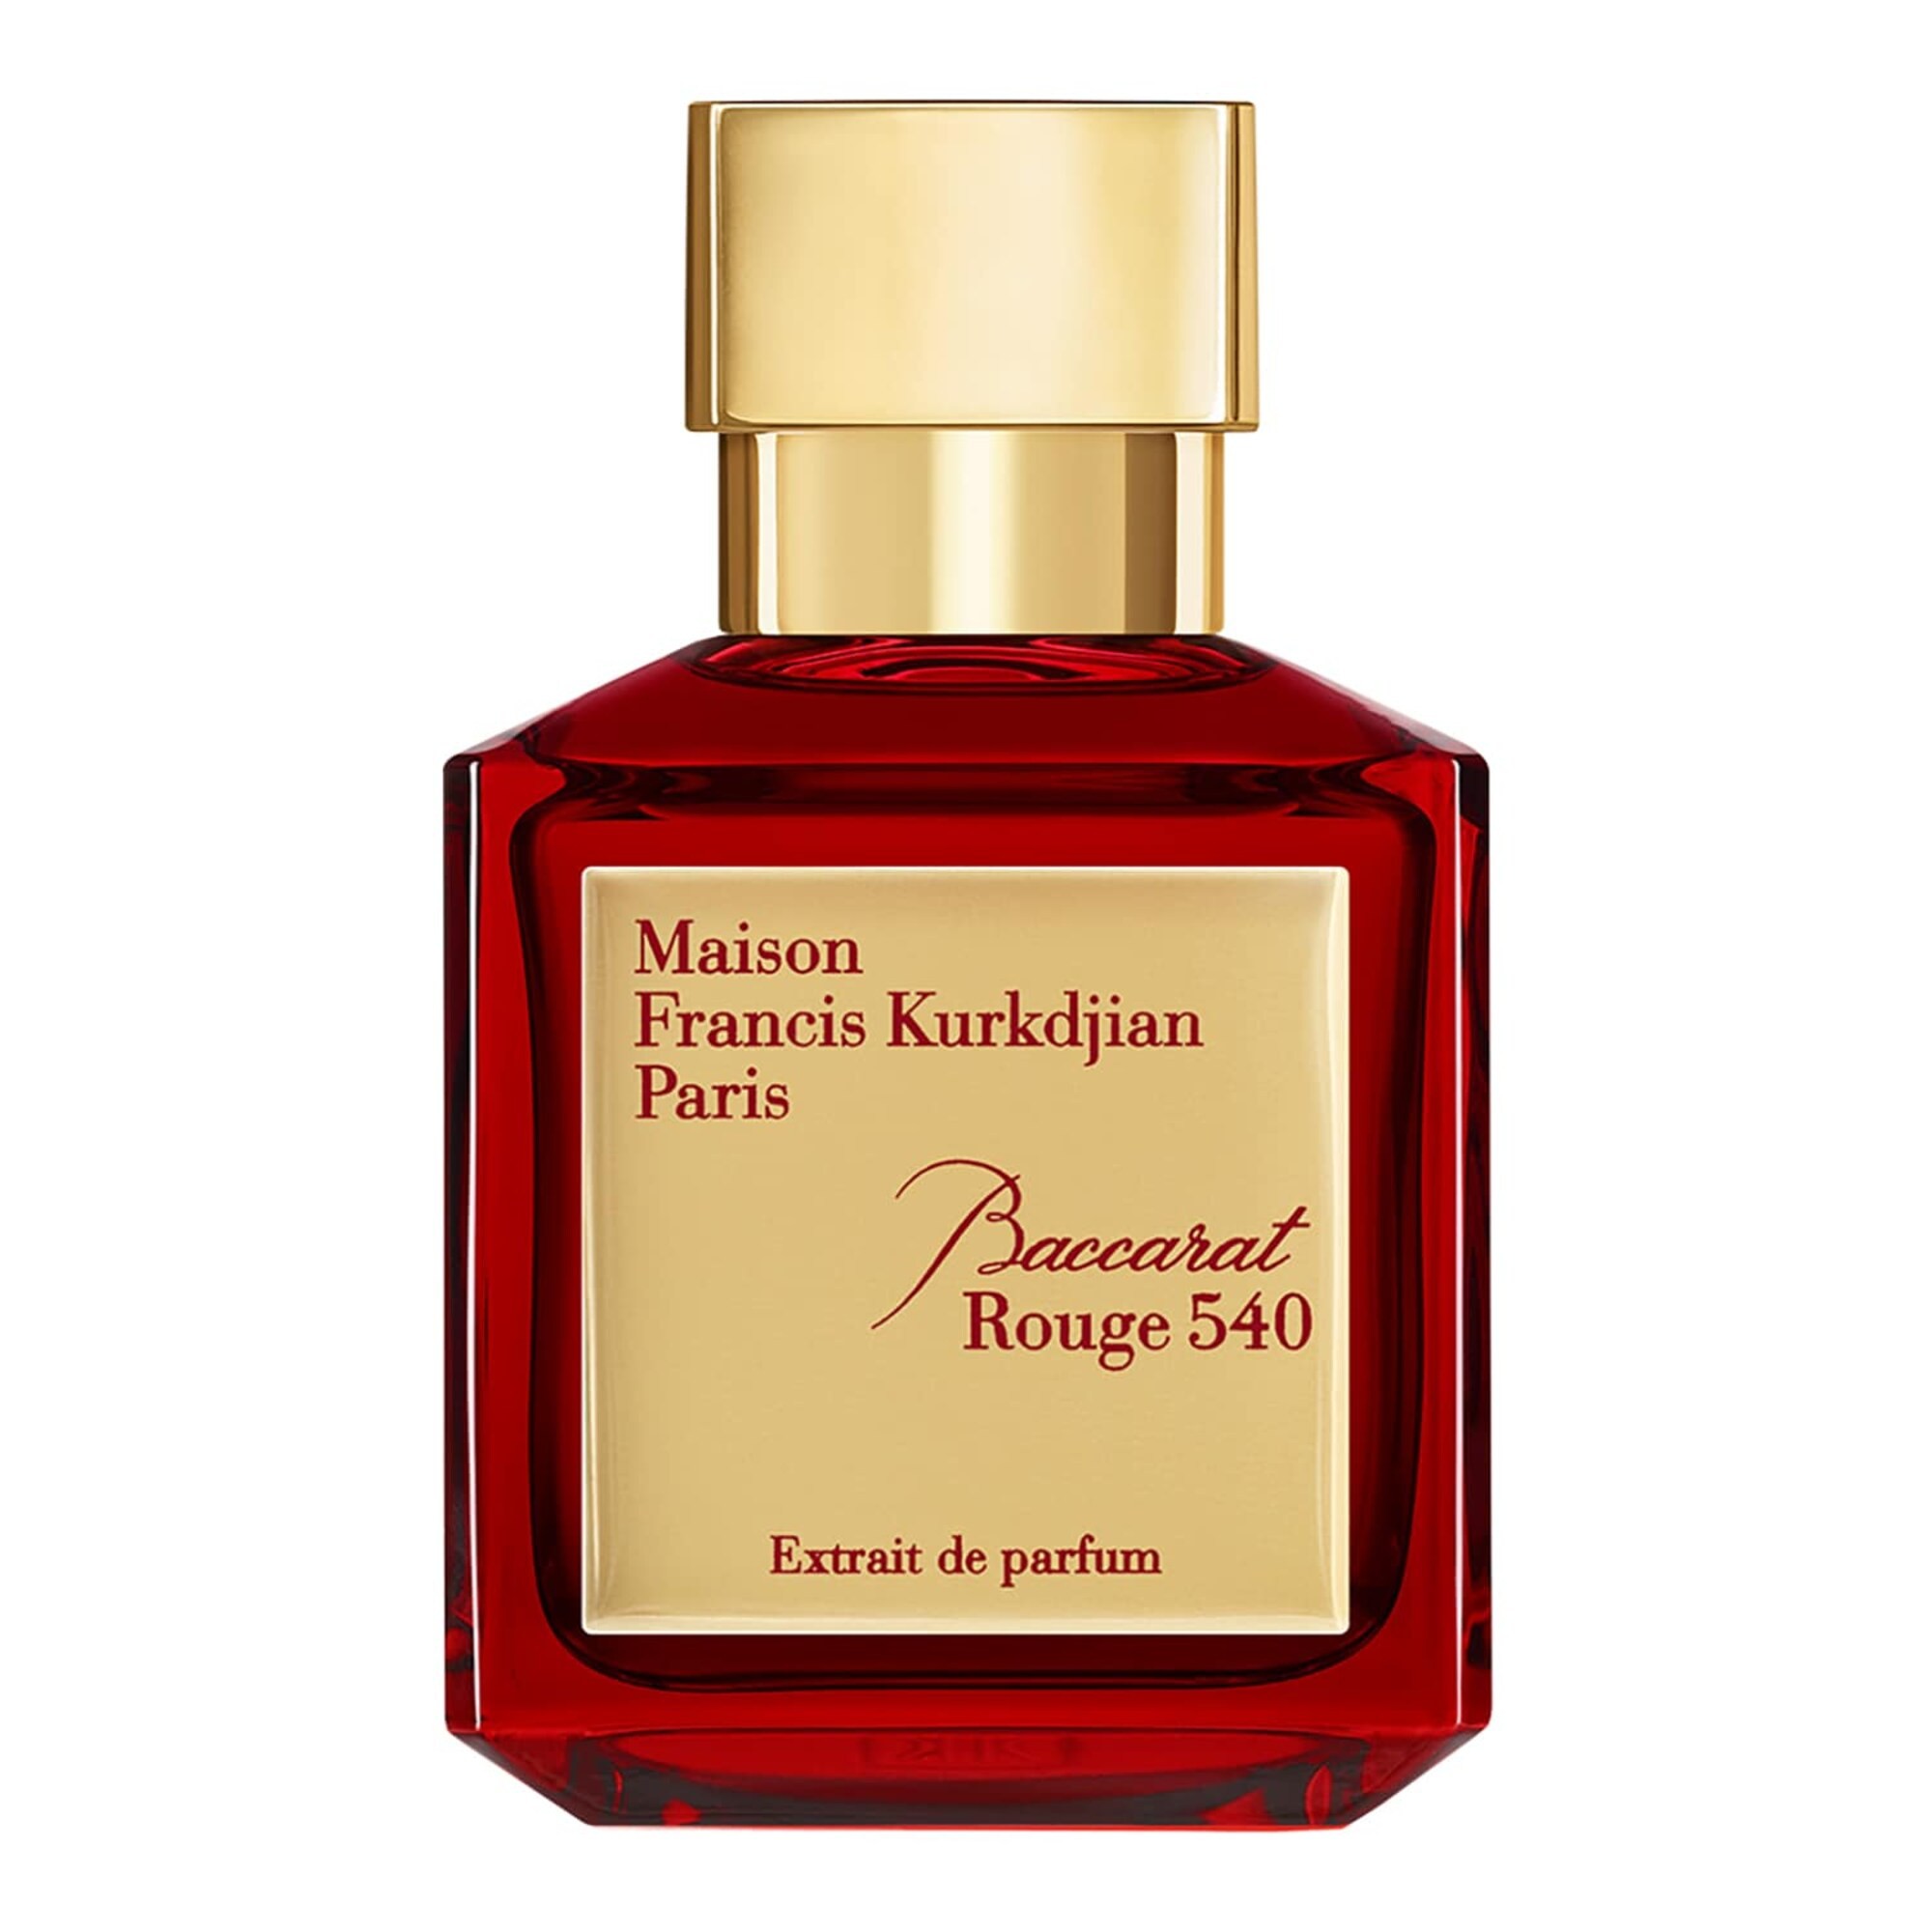 Maison Francis Kurkdjian Baccarat Rouge 540 Extrait De Parfum 70 mL